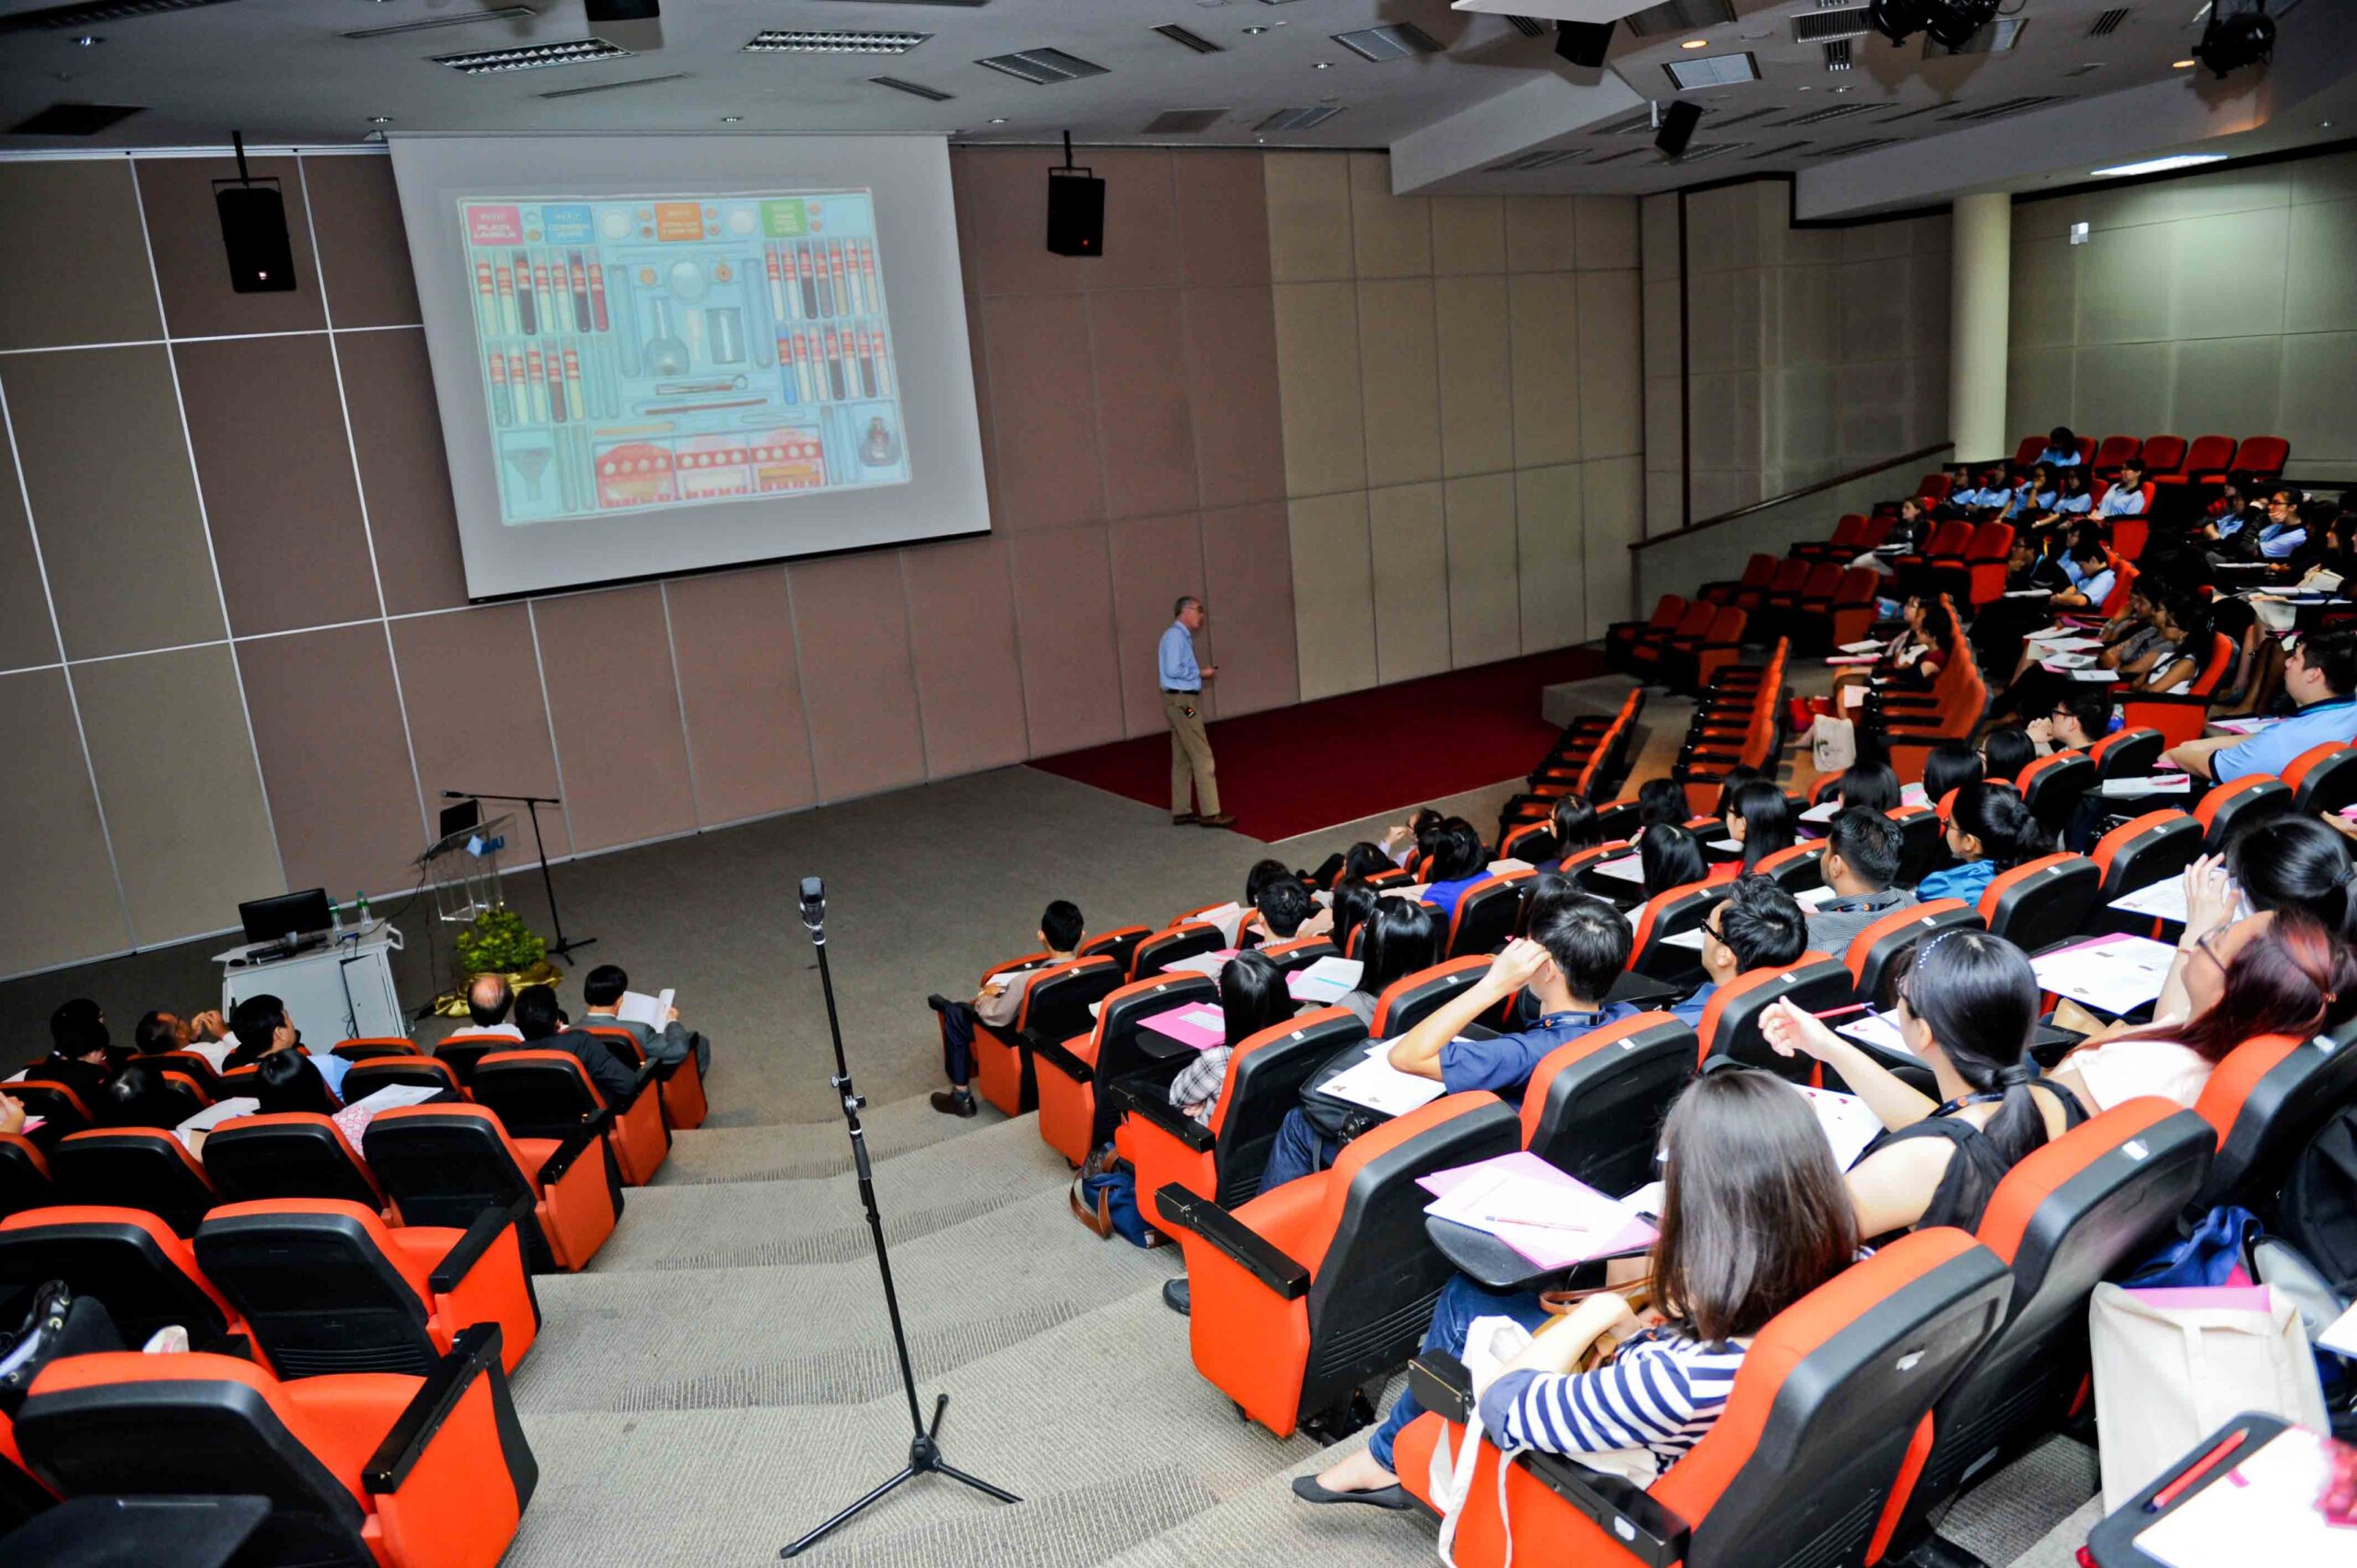 بورسیه پزشکی مالزی در دانشگاه بین المللی پزشکی مالزی